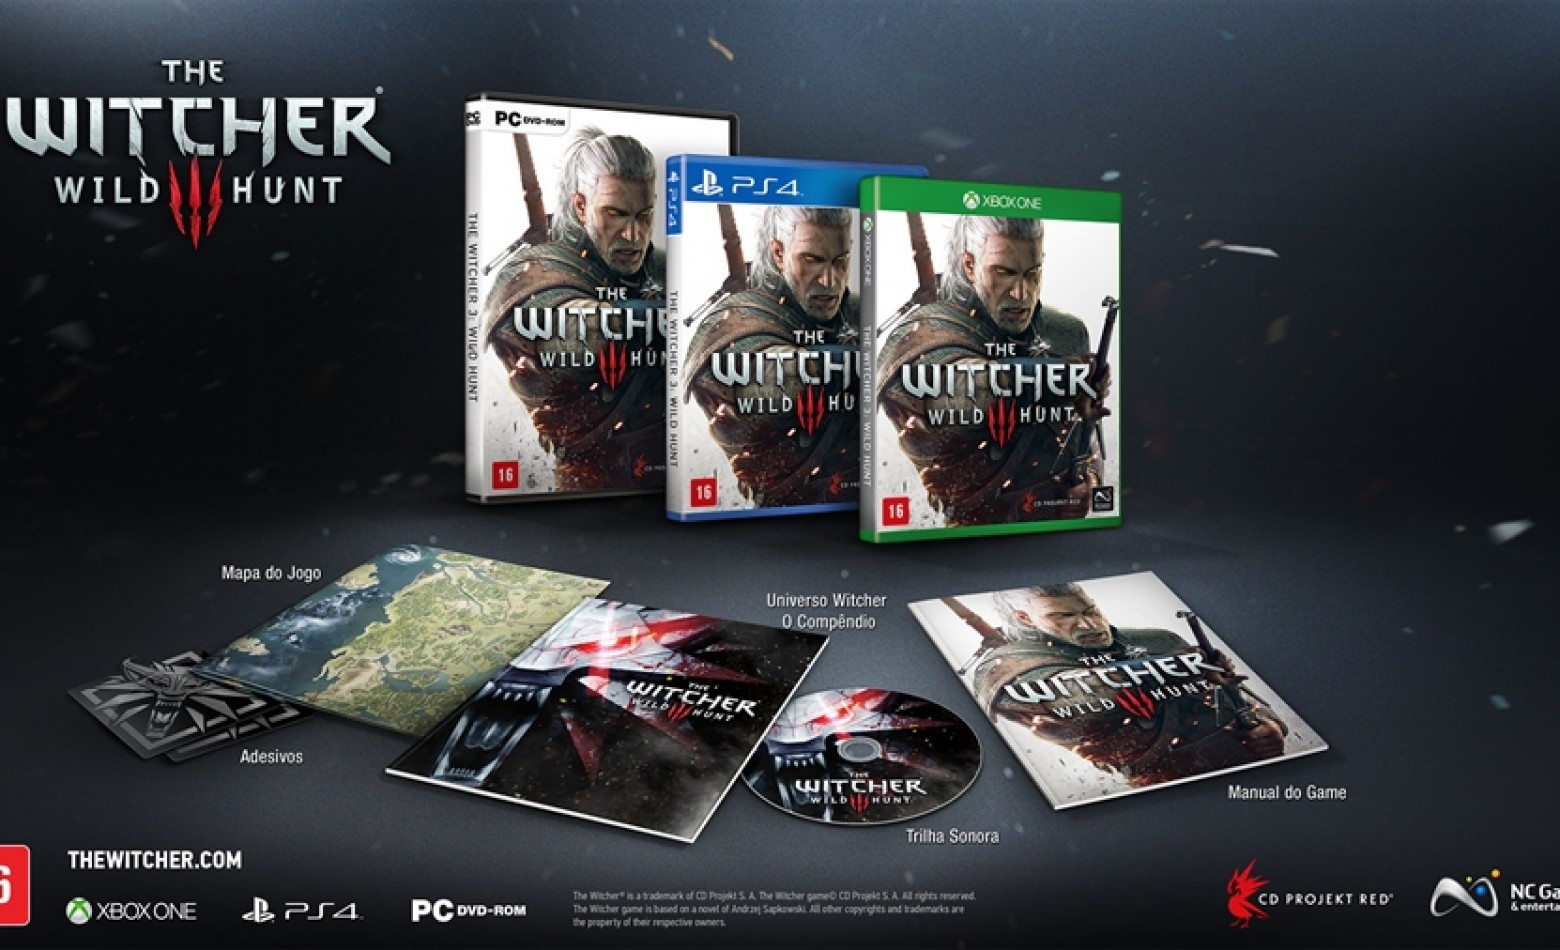 Para compensar preço elevado, versão básica de The Witcher 3 será uma “mini edição especial”